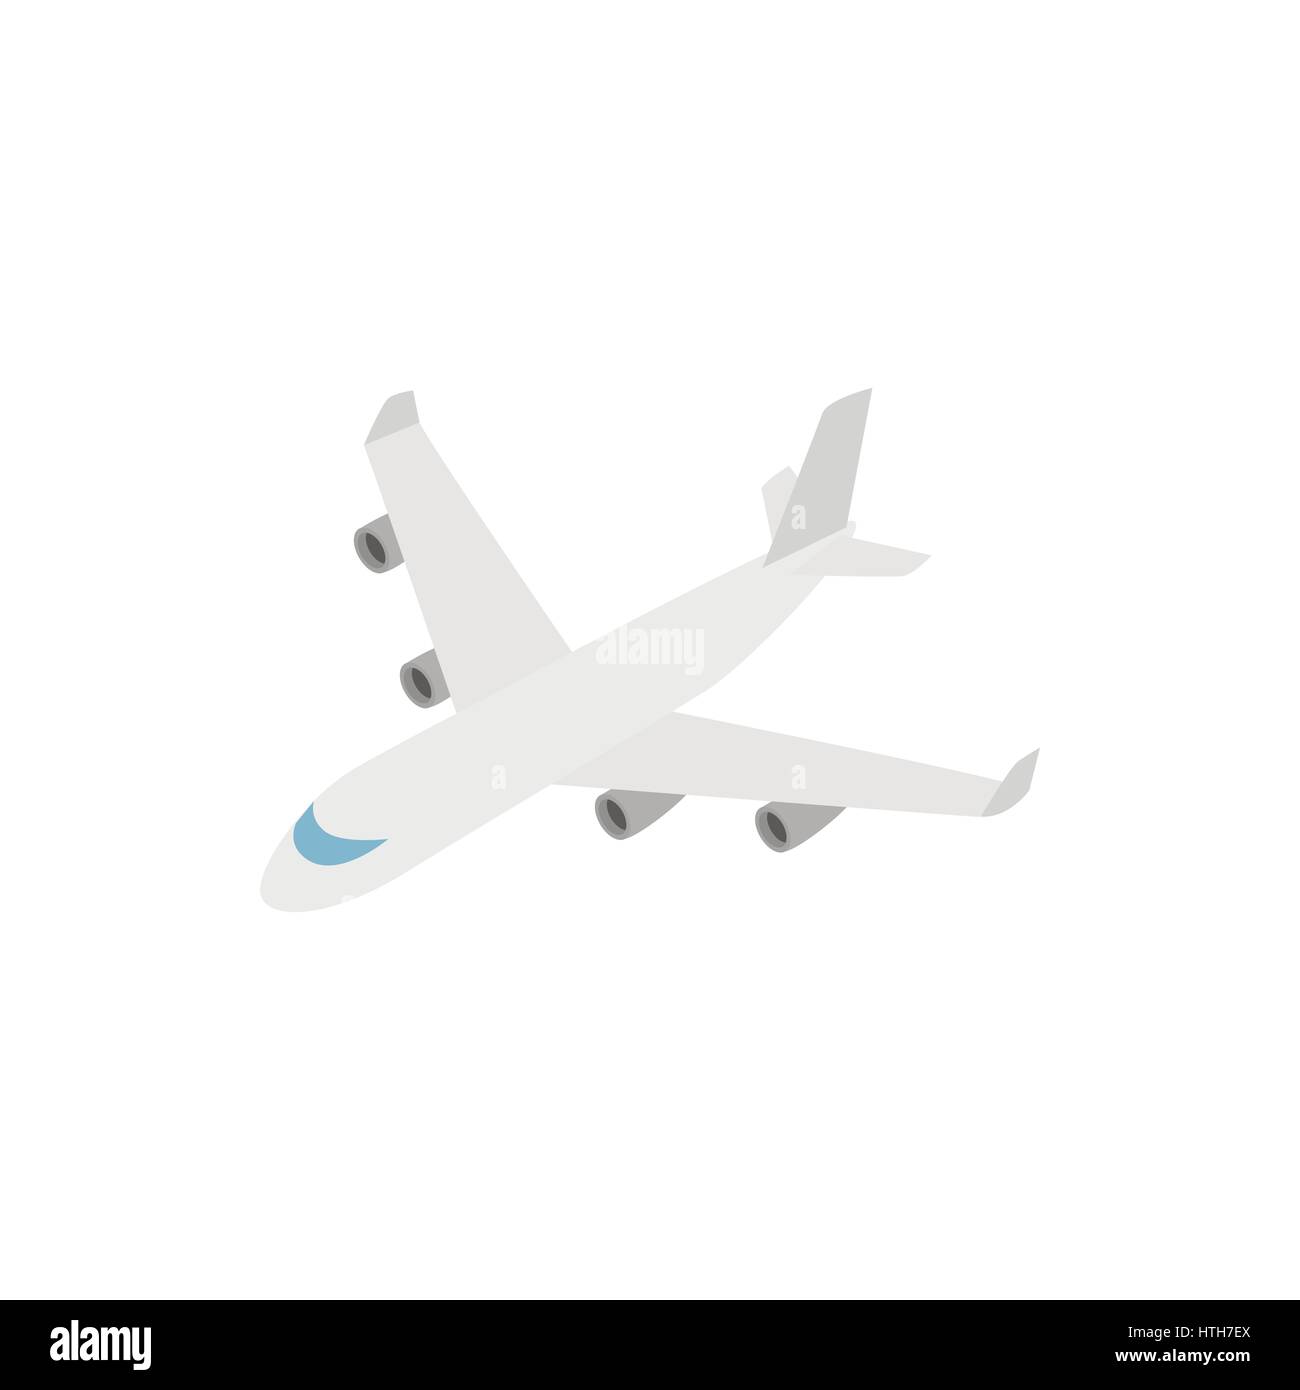 Cargo plane icon, isometric 3d style Stock Vector